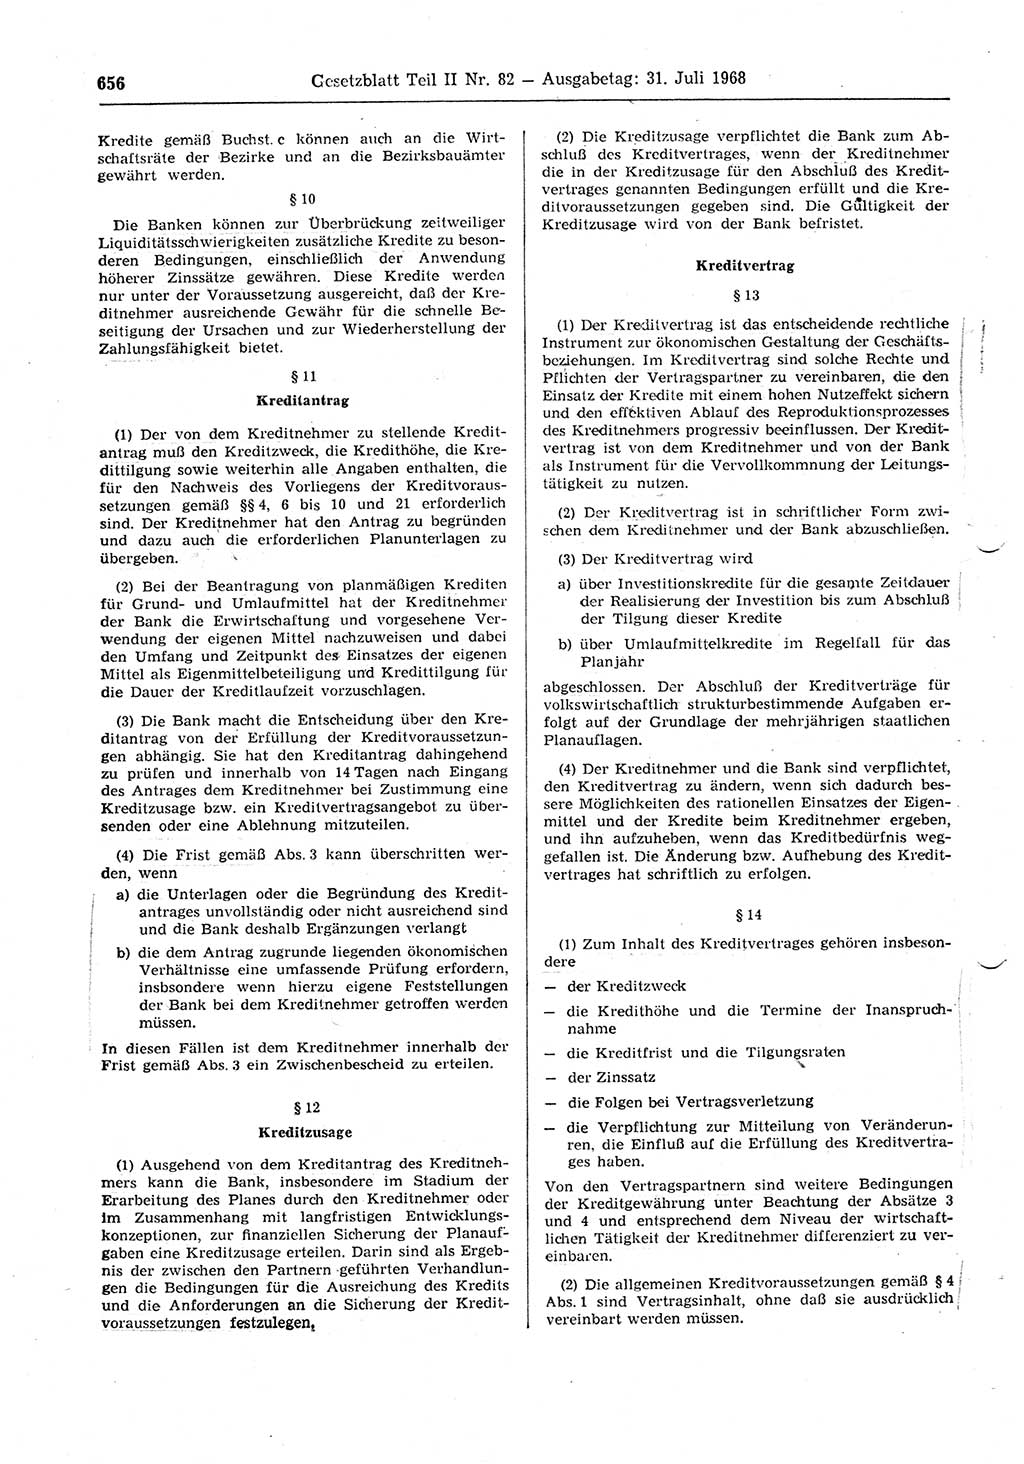 Gesetzblatt (GBl.) der Deutschen Demokratischen Republik (DDR) Teil ⅠⅠ 1968, Seite 656 (GBl. DDR ⅠⅠ 1968, S. 656)